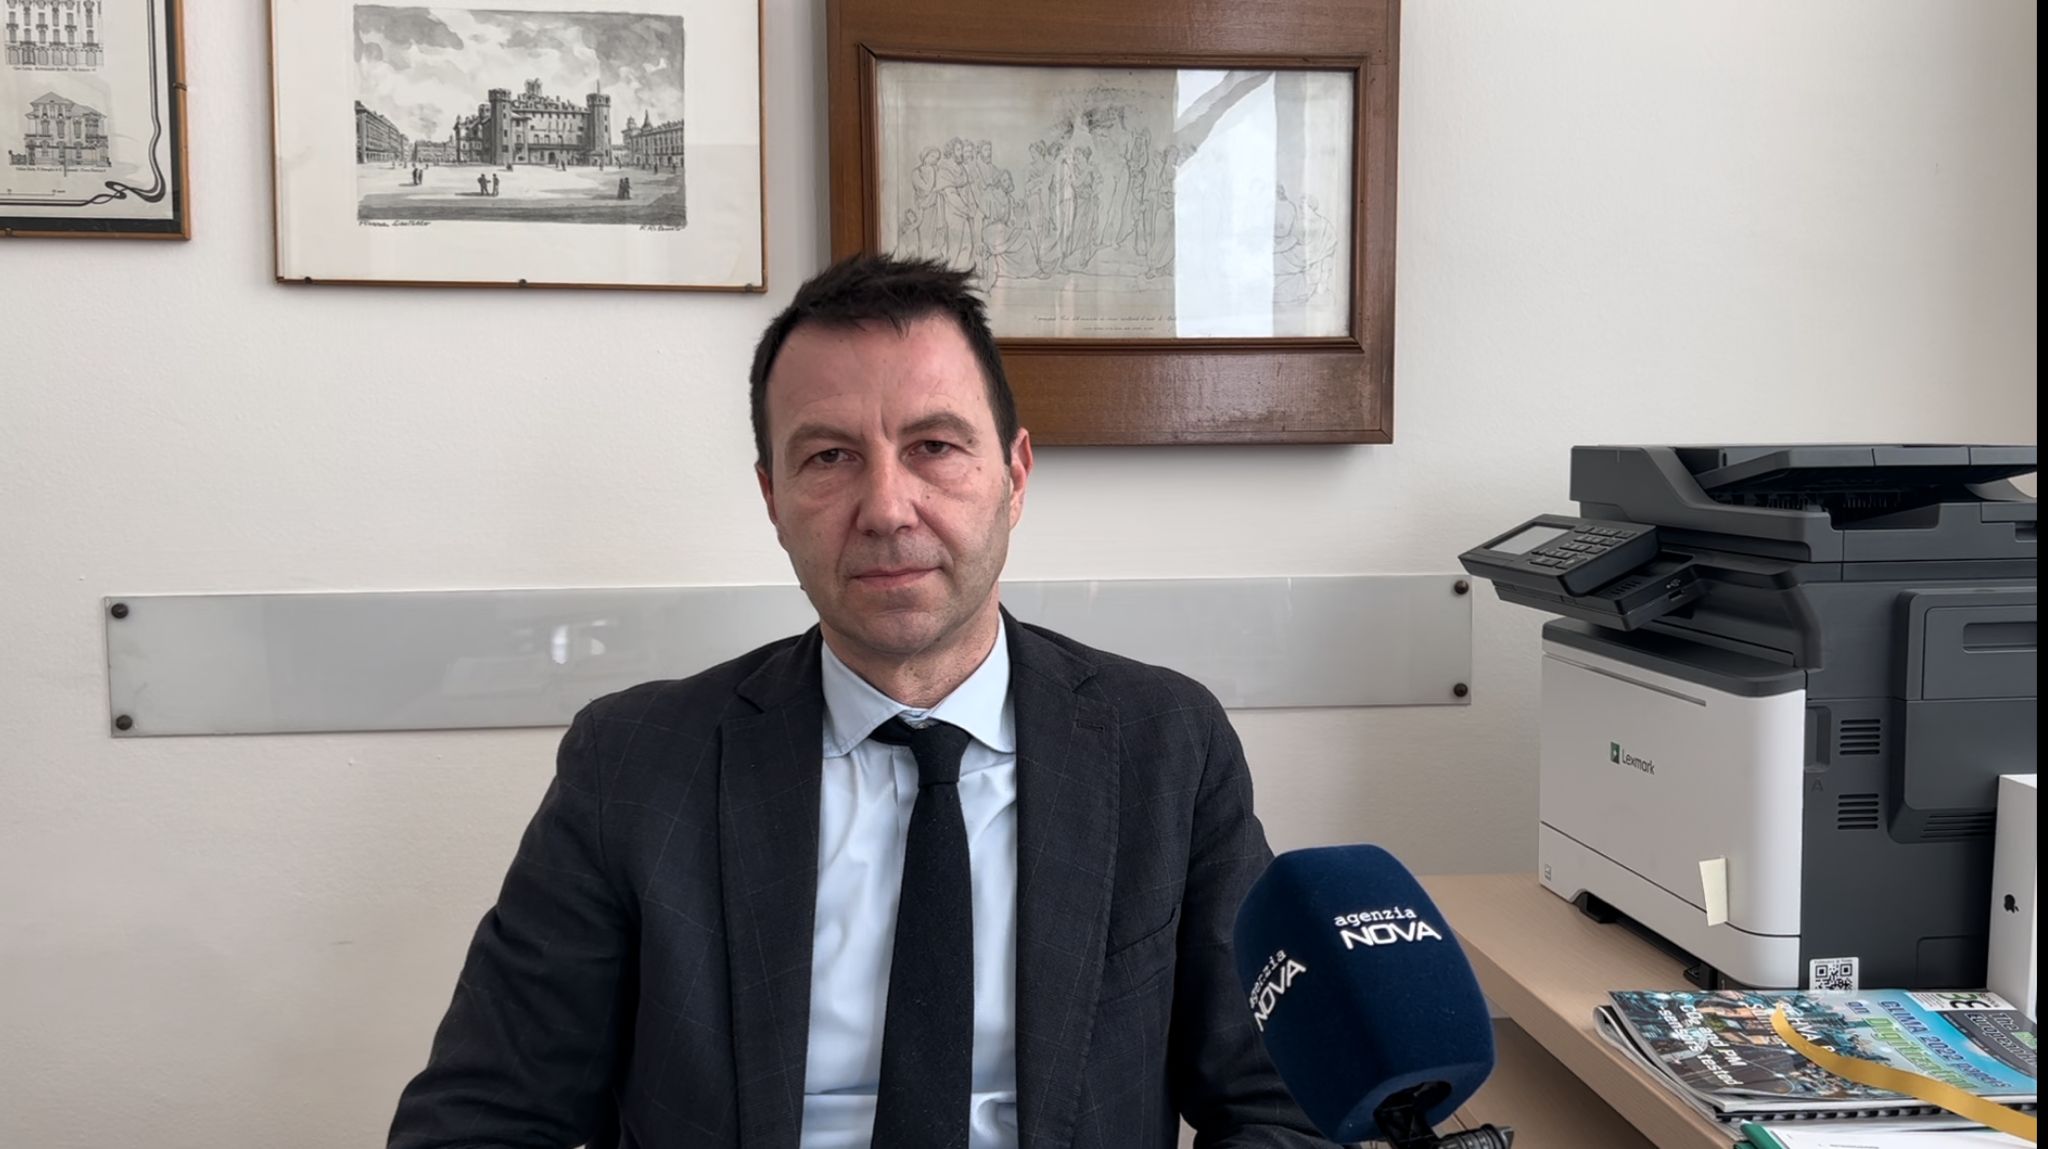 Il vicerettore del Politecnico di Torino a Nova: “Il futuro dell’Ateneo è al servizio della società”